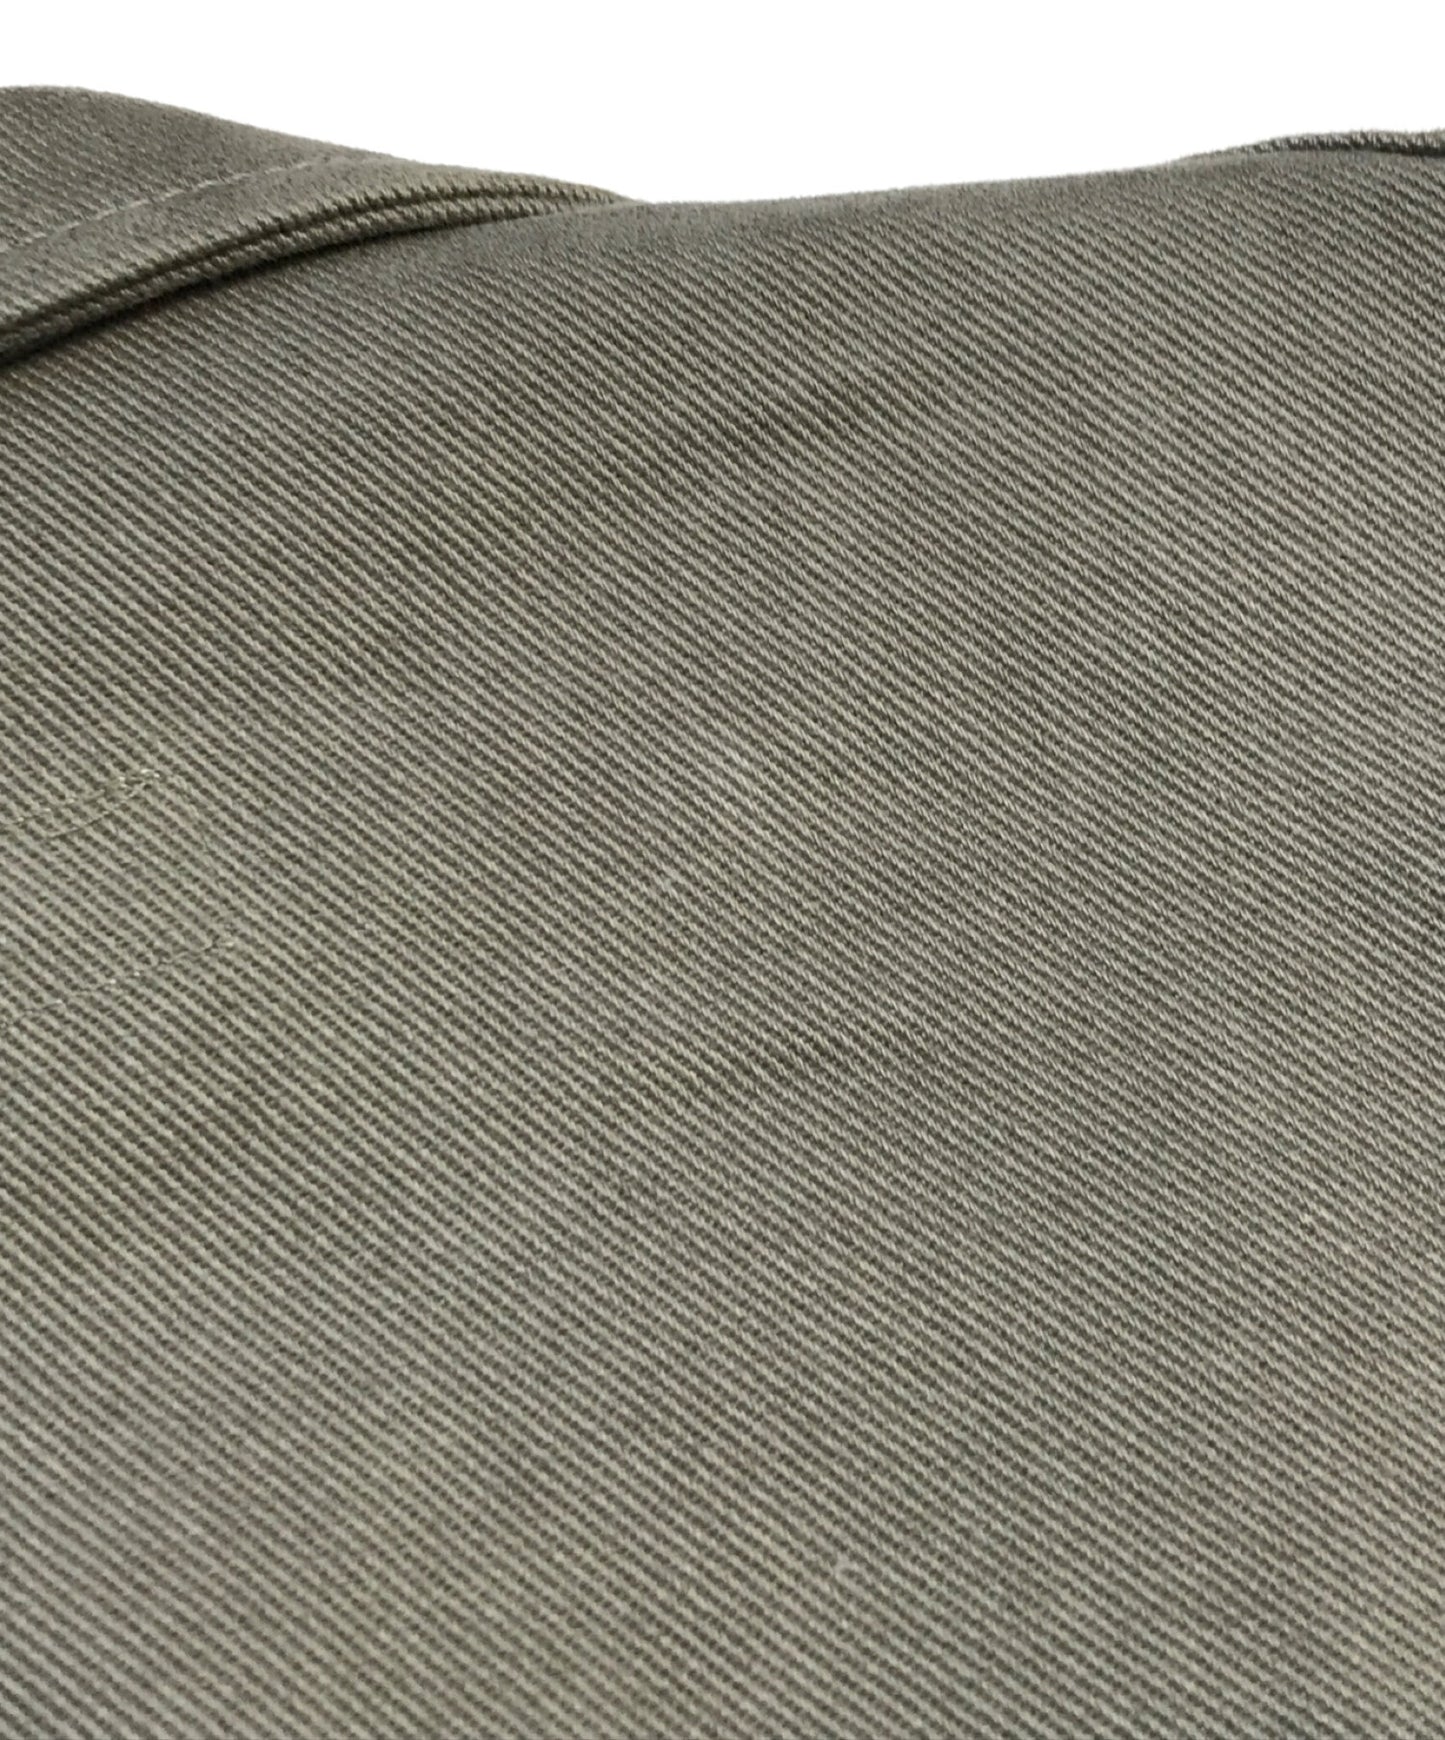 Comme des Garcons衬衫切割量身定制的外套W28168